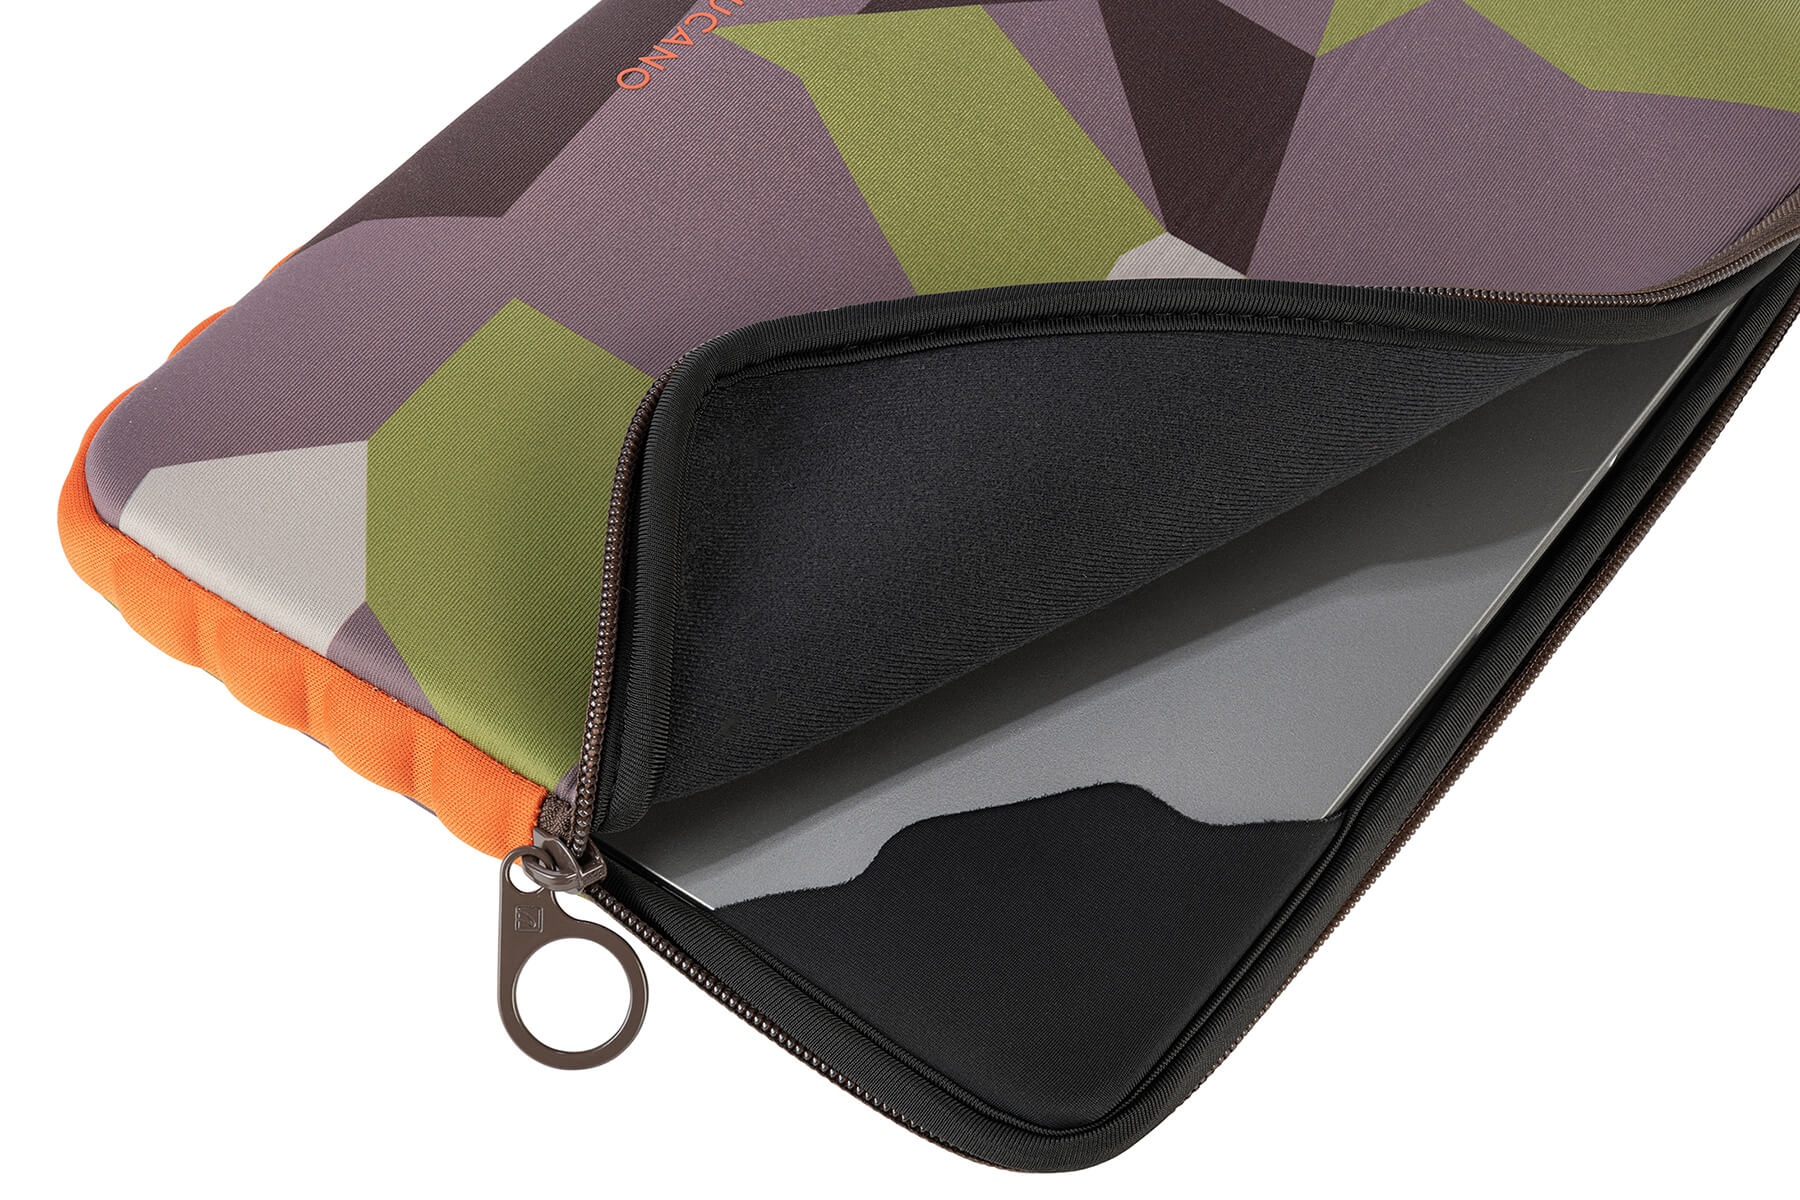 Offroad Neopren, Skin für TUCANO Second Sleeve Bunt Universal Notebook Tasche